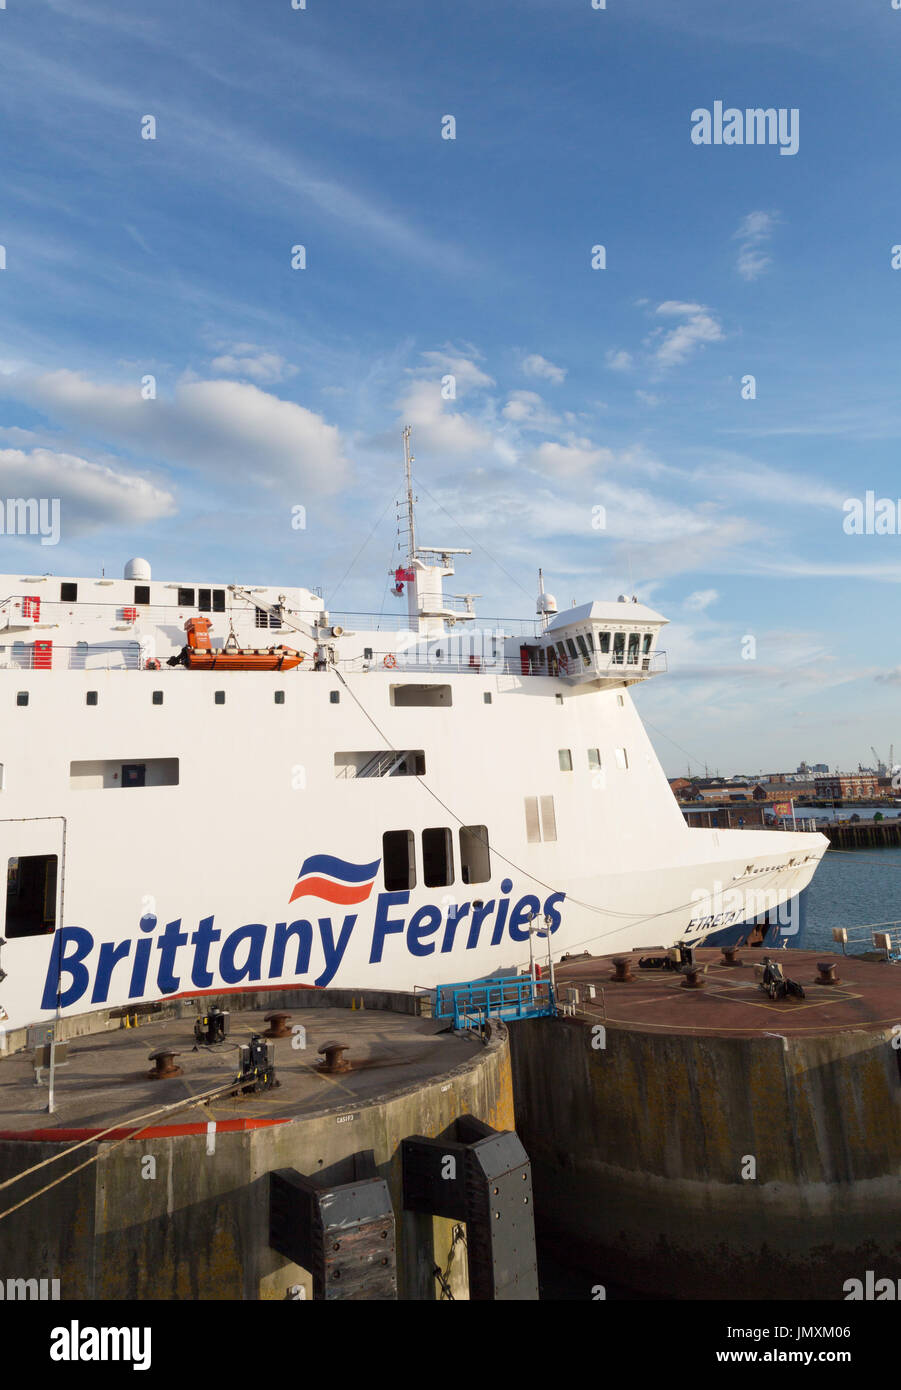 Brittany Ferries - Brittany Ferry dans un dock, le port de Portsmouth, Portsmouth, Royaume-Uni Banque D'Images